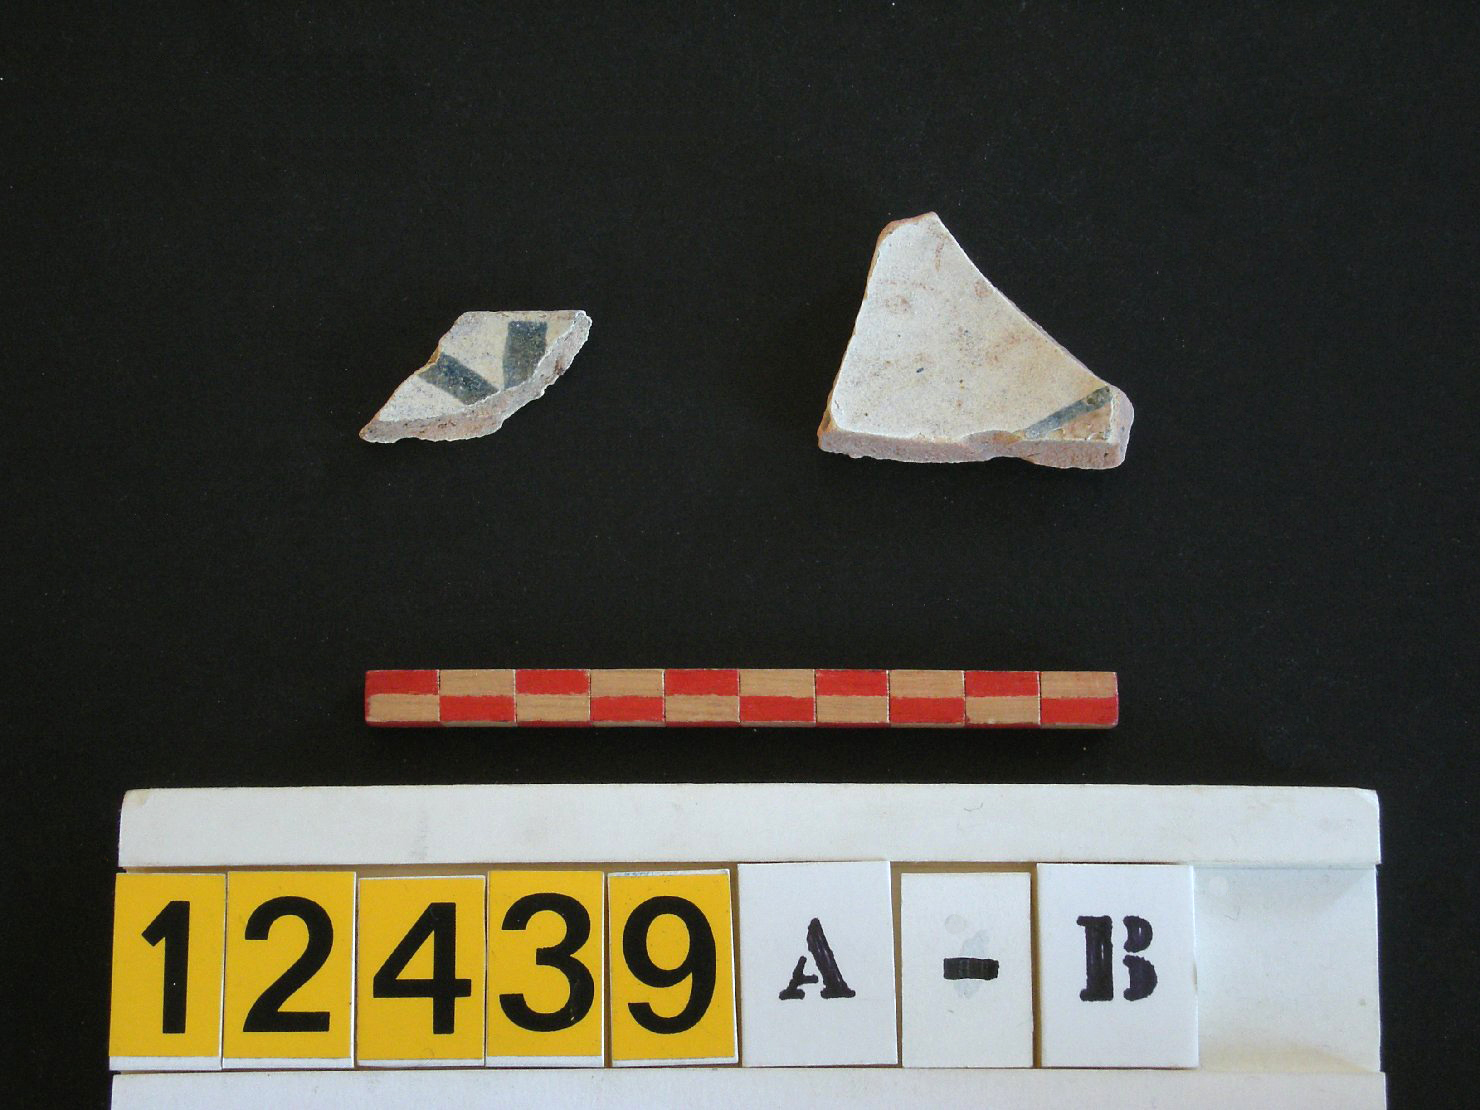 motivi decorativi geometrici (scodella, frammento) - manifattura ispano-moresca (prima metà sec. XV)